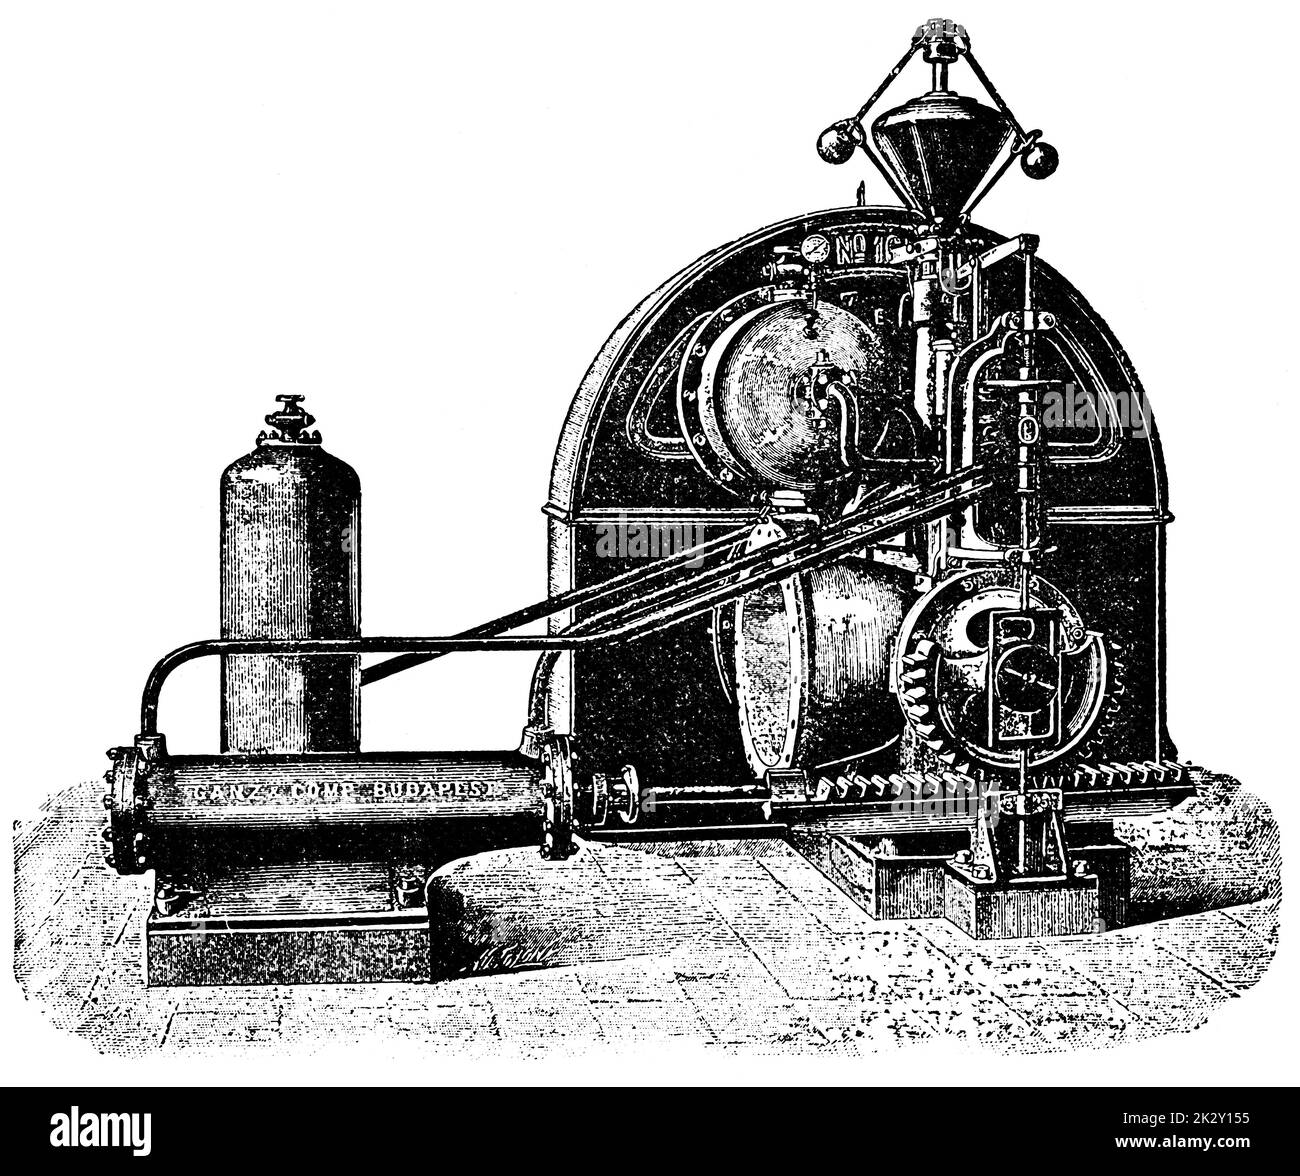 Turbine à eau tronquée par un ingénieur hydraulique français Louis Dominique Girard. Illustration du 19e siècle. Allemagne. Arrière-plan blanc. Banque D'Images